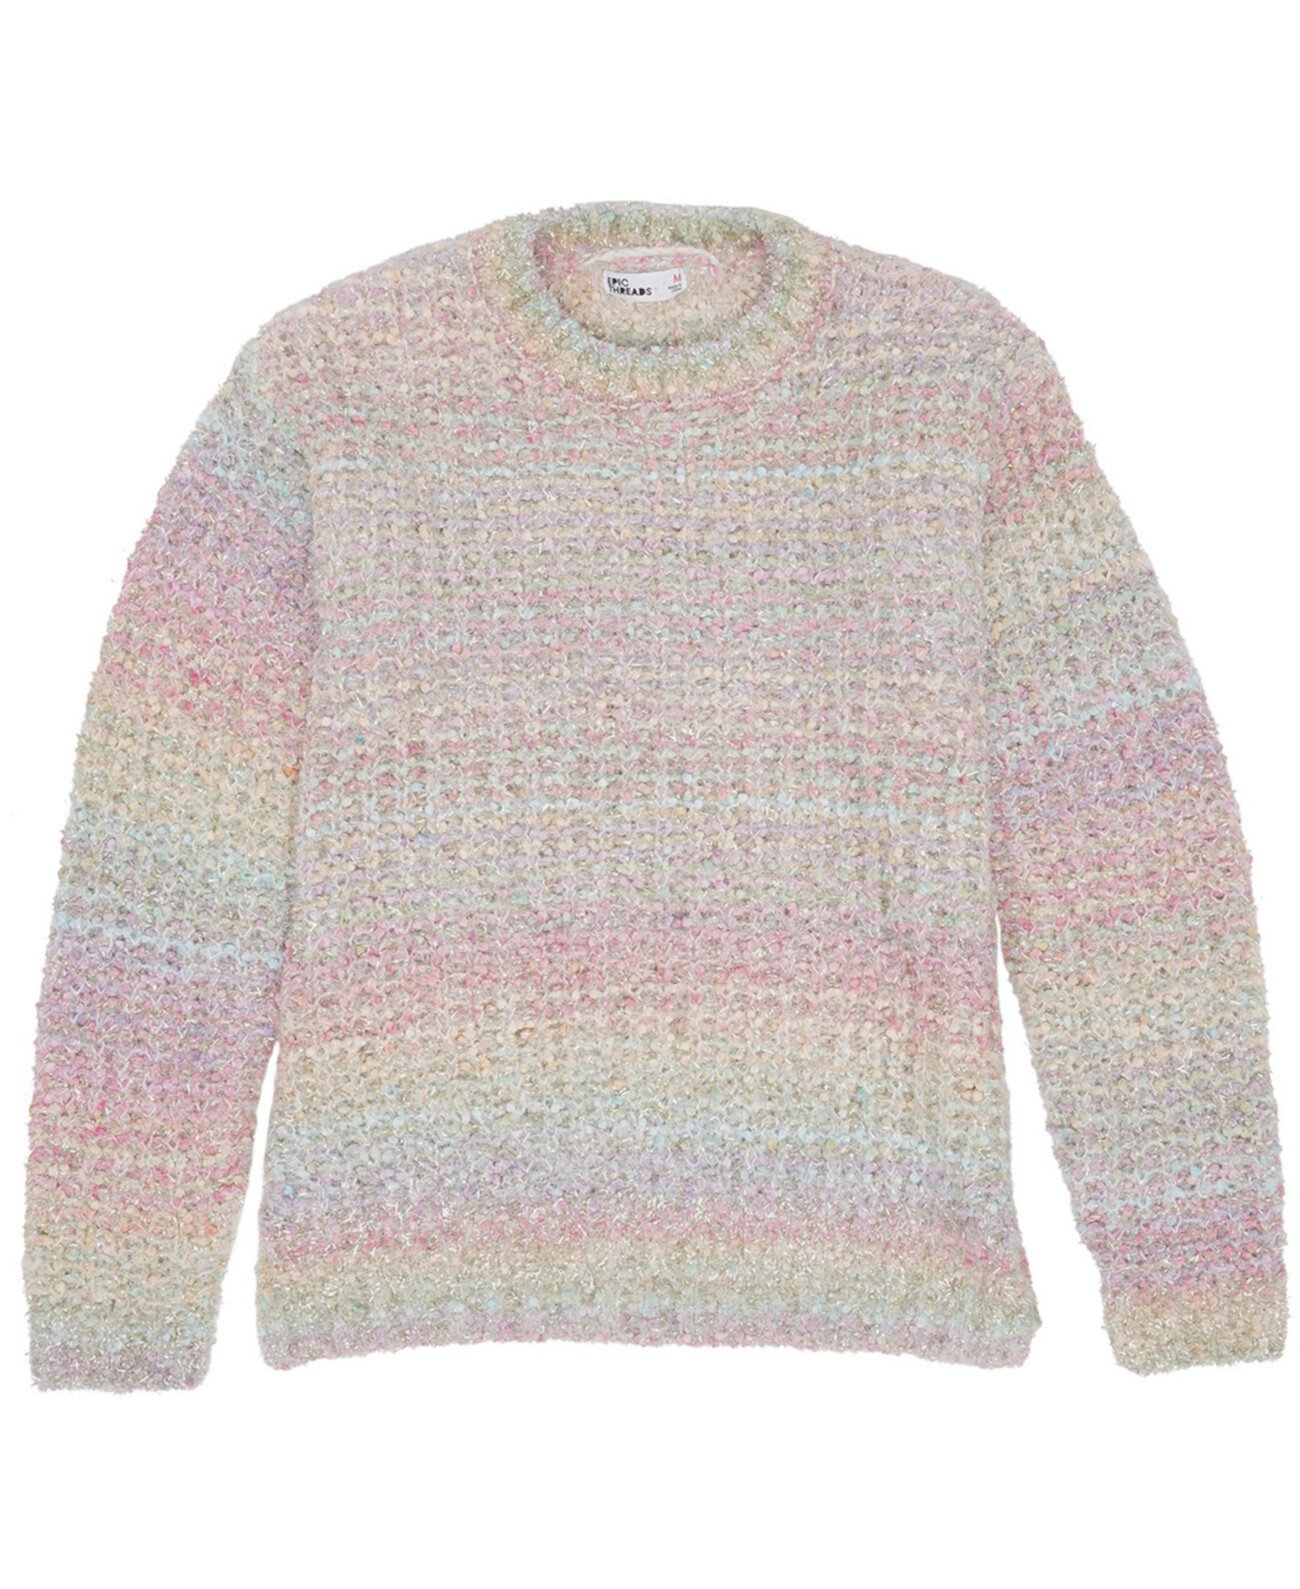 Полосатый свитер с завязками для больших девочек Epic Threads